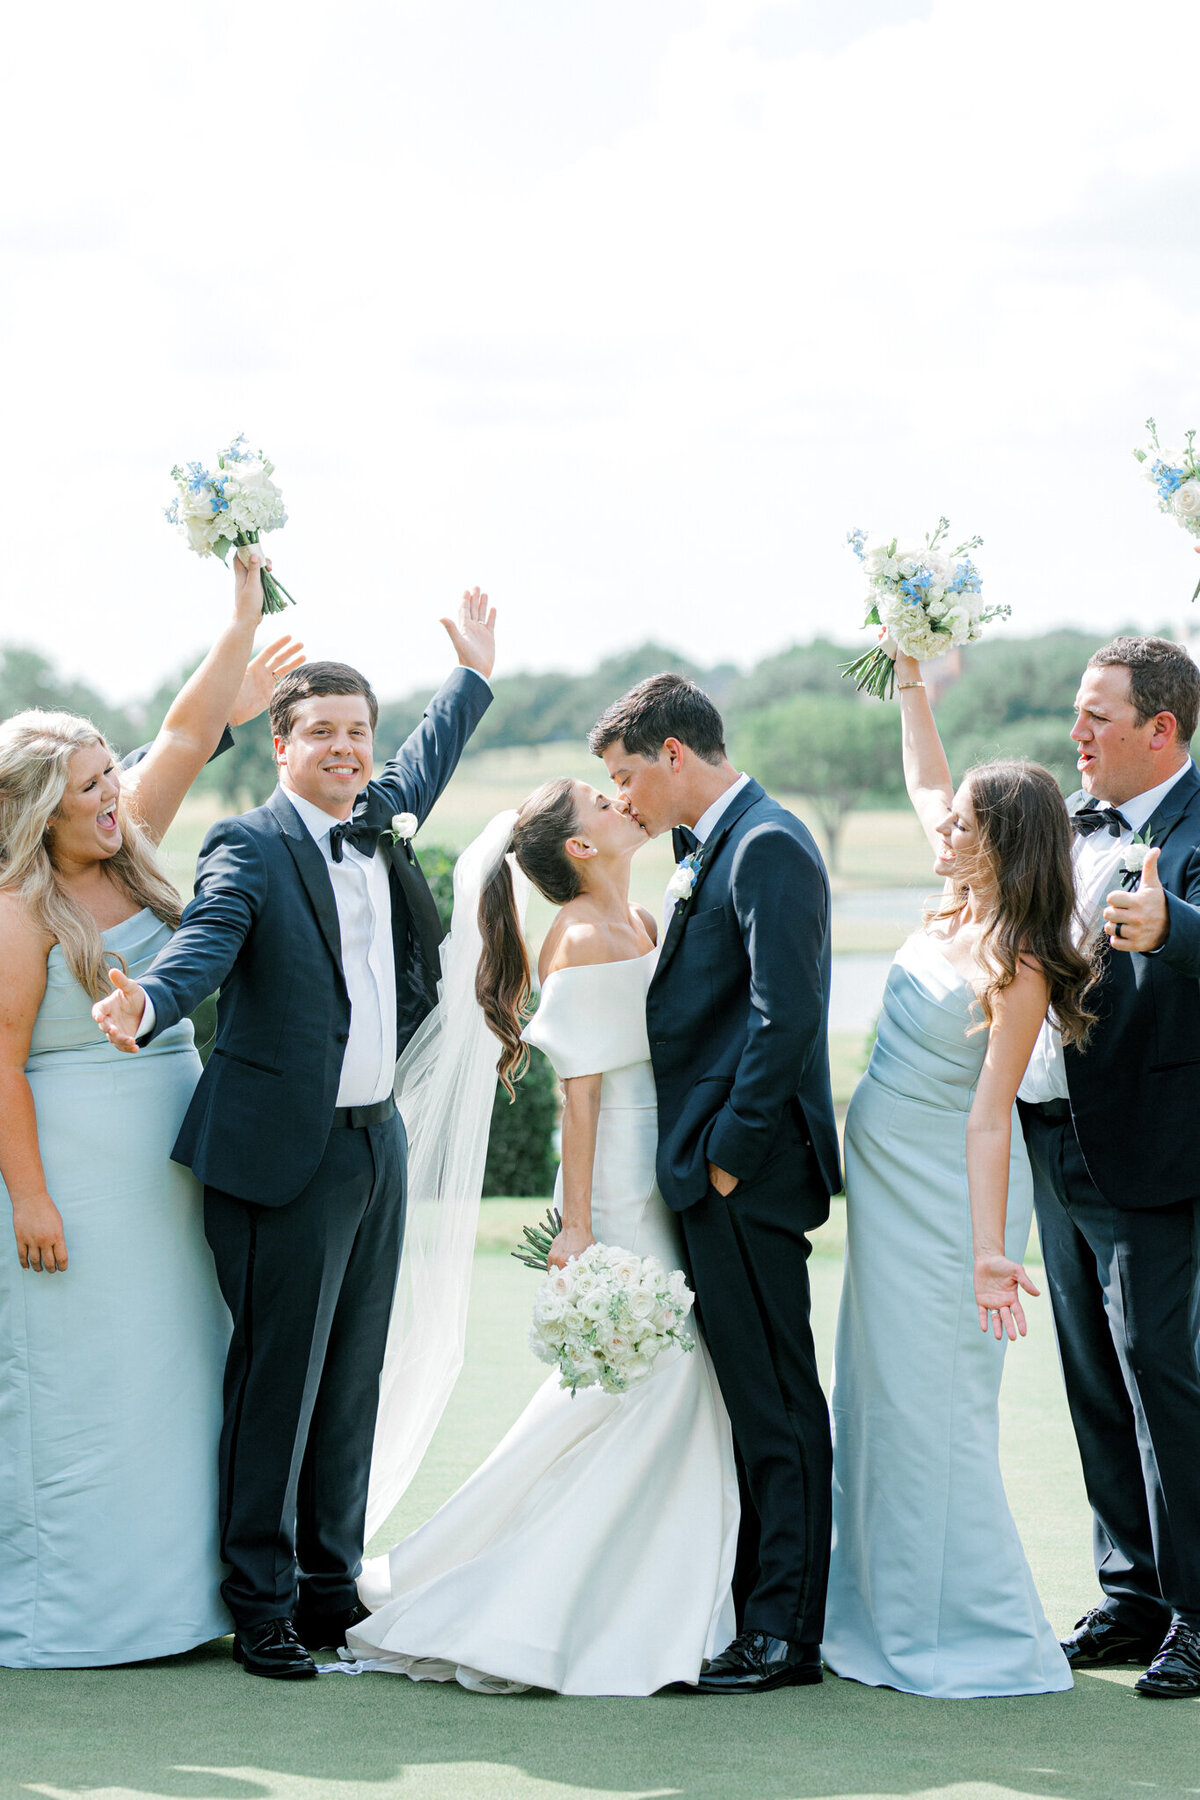 Annie & Logan's Wedding | Dallas Wedding Photographer | Sami Kathryn Photography-157